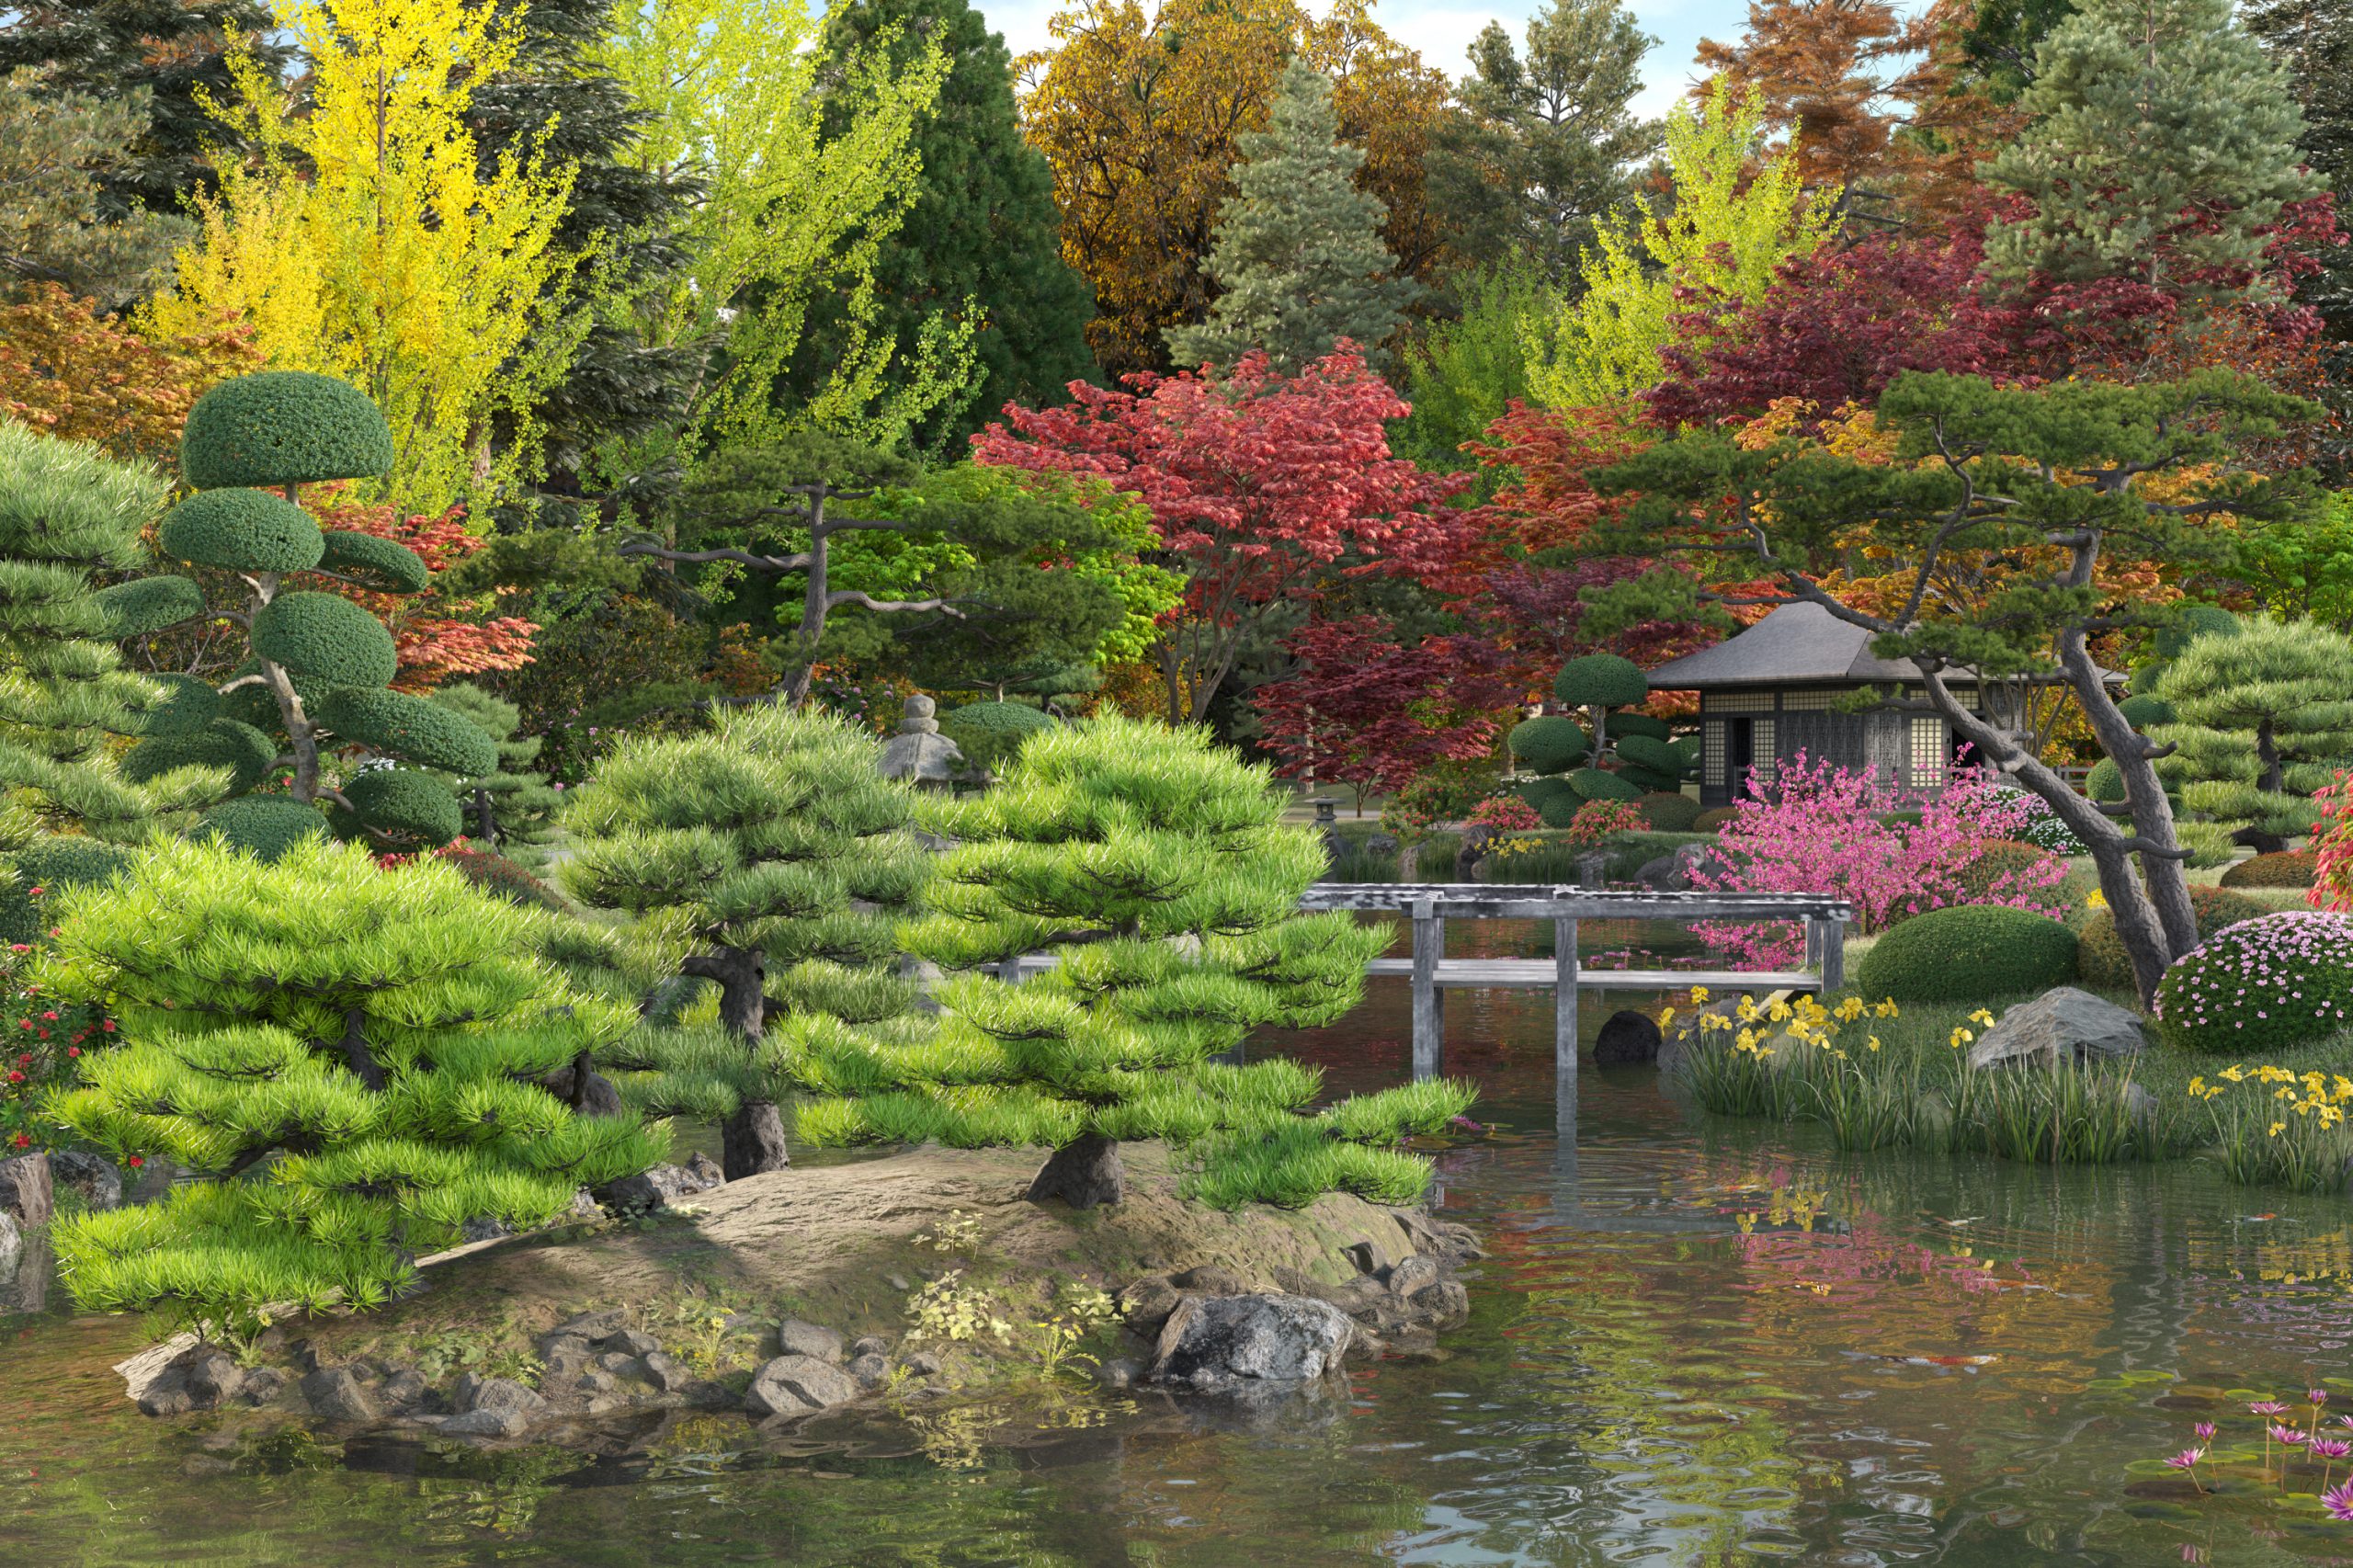 Collection 24 – Japanese Garden